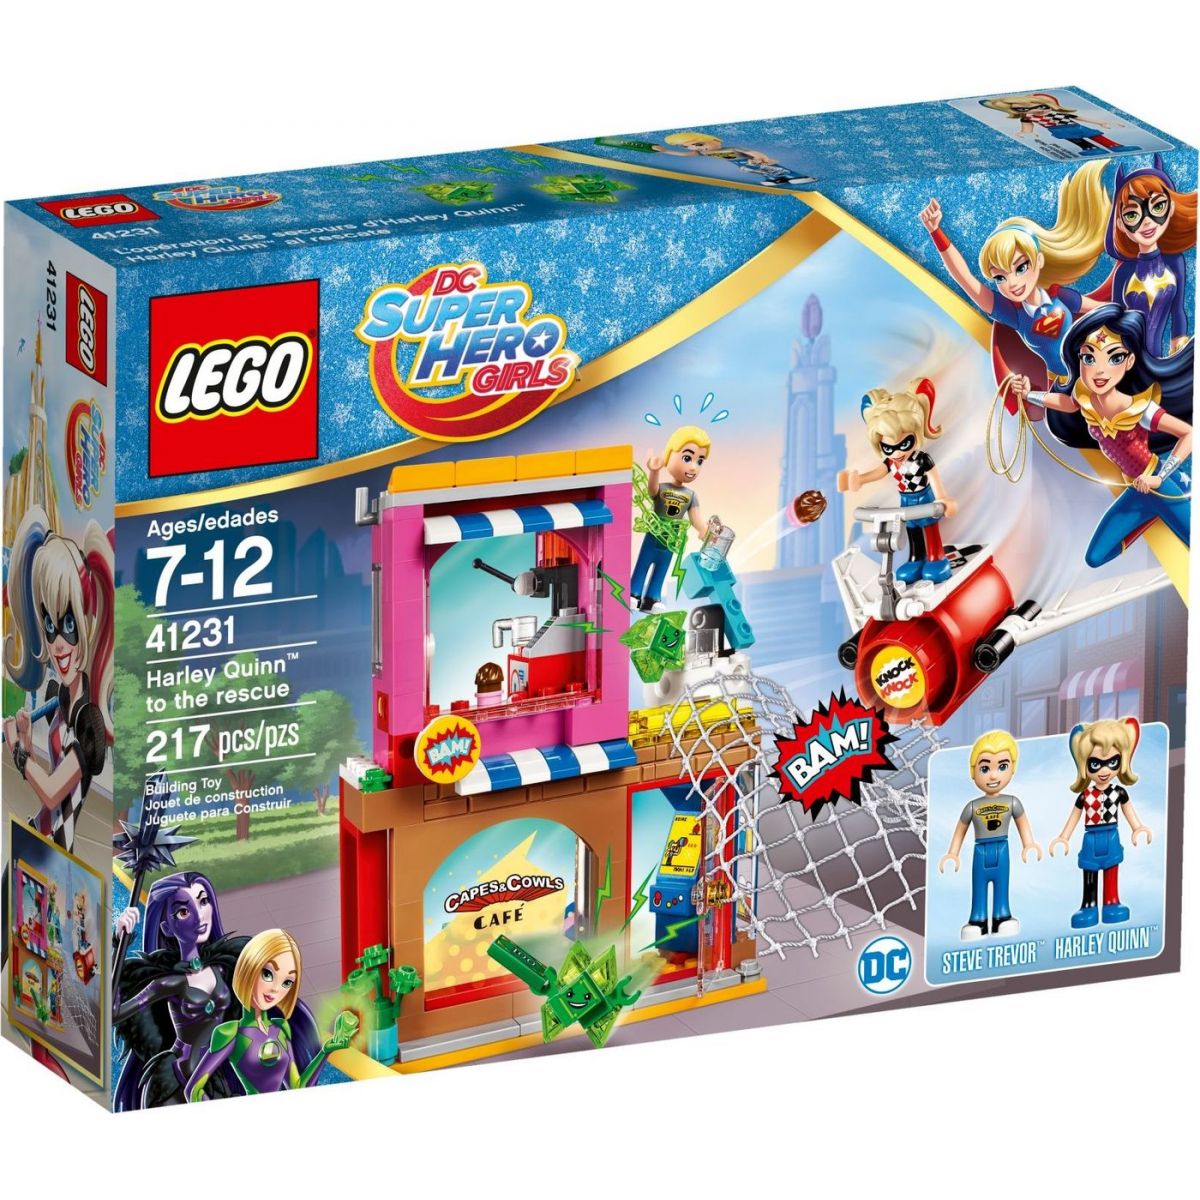 LEGO DC SUPER HERO GIRLS 41231 Harley Quinn sa ponáhľa na pomoc